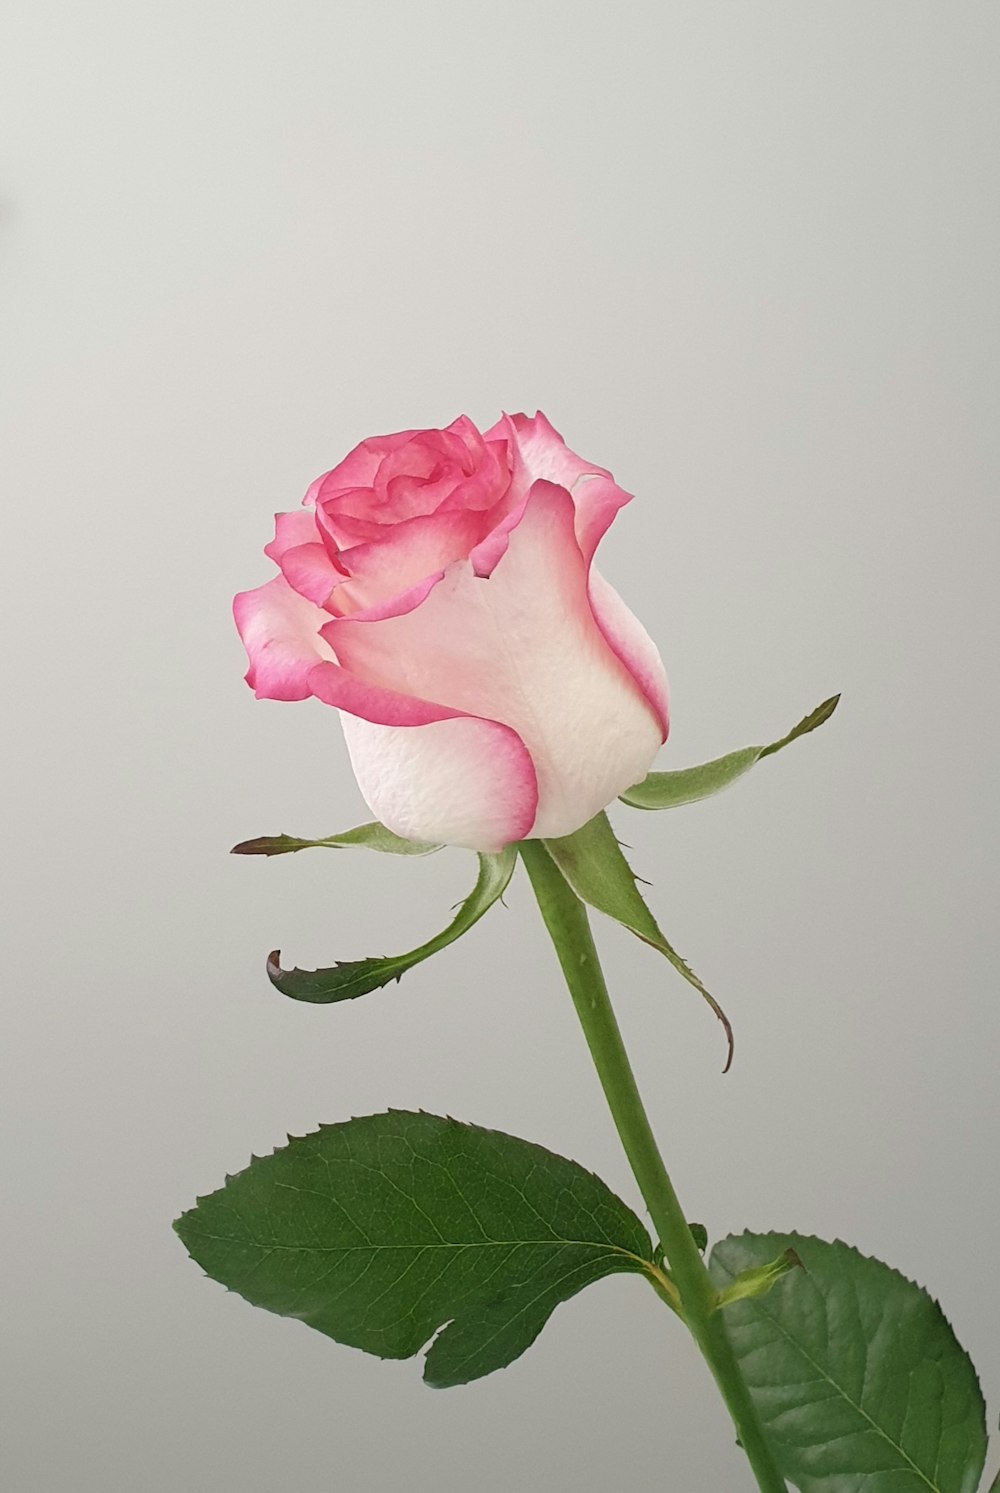 Más de 100 imágenes de flores rosas | Descargar imágenes gratis en Unsplash